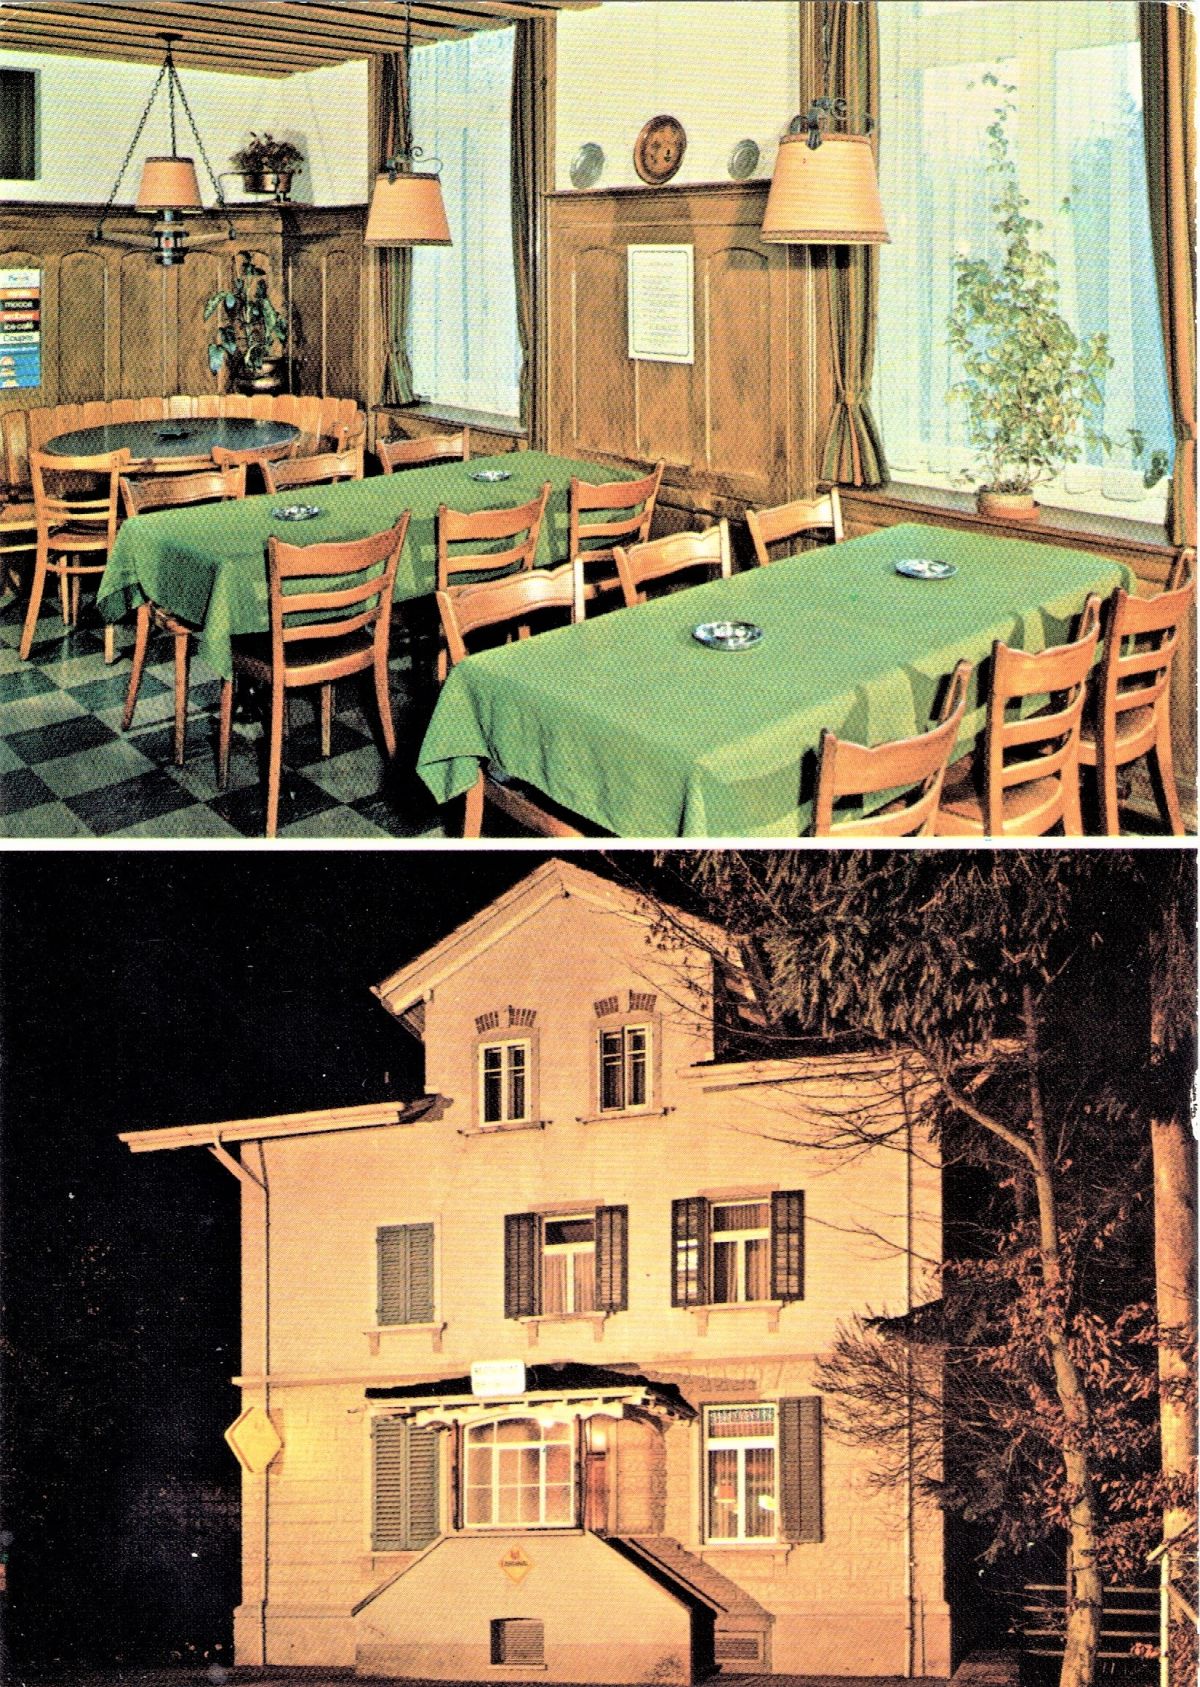 Ansichtskarte von Otelfingen: Bahnhofstrasse 47 | um 1975